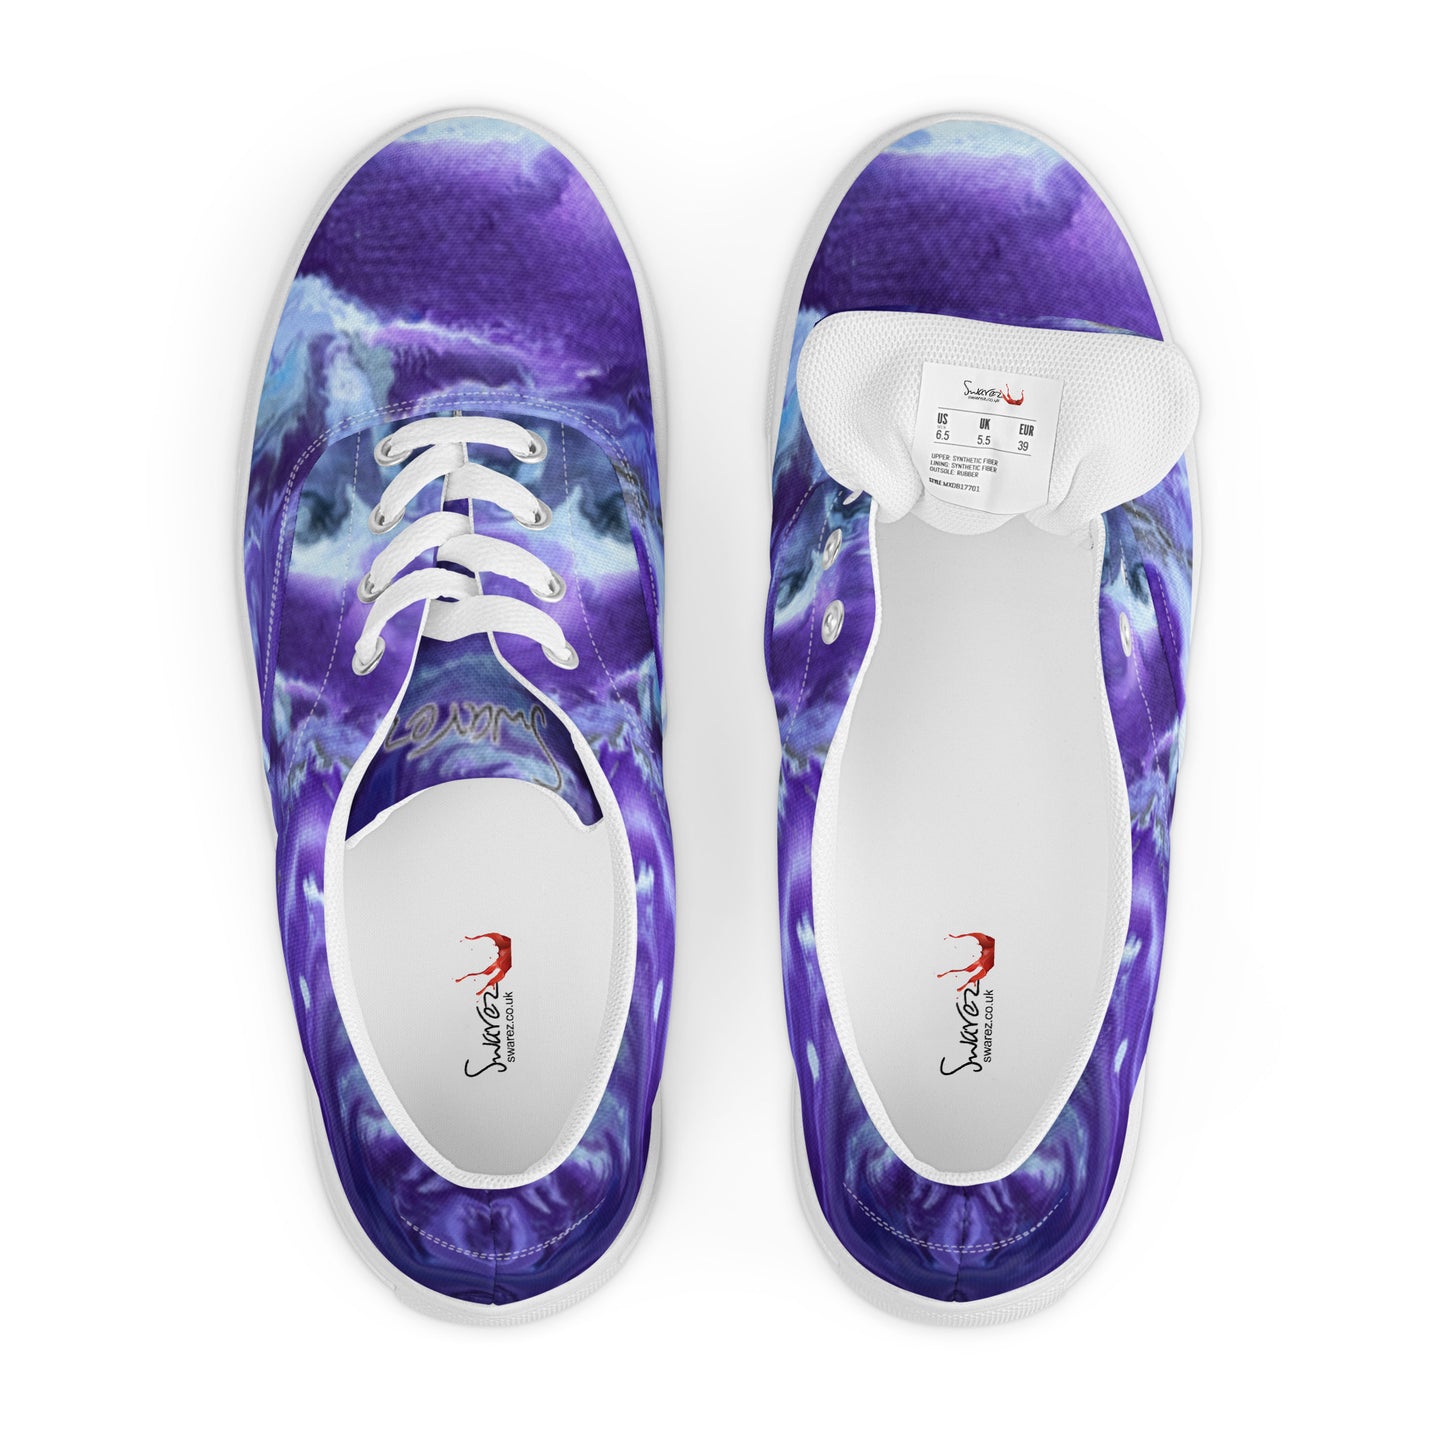 Women’s lace-up canvas shoes - Ady's Purplez!